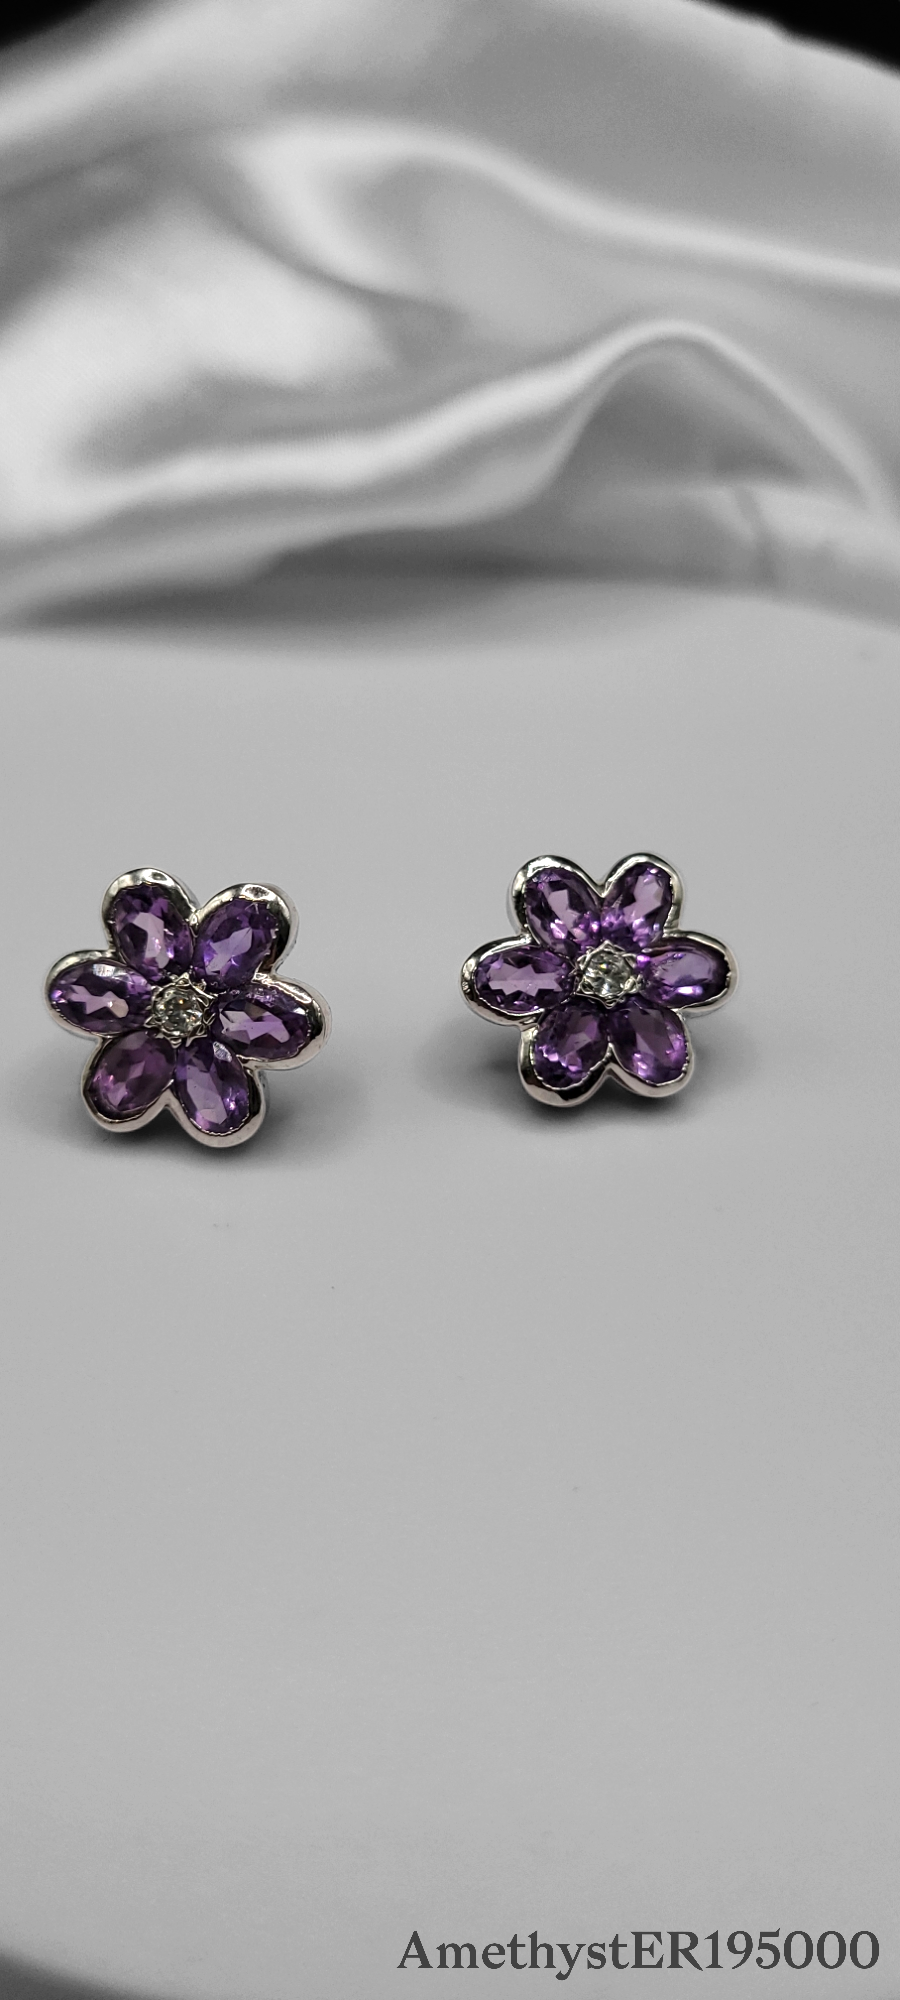 Amethyst Flower design earrings on Sterling Silver